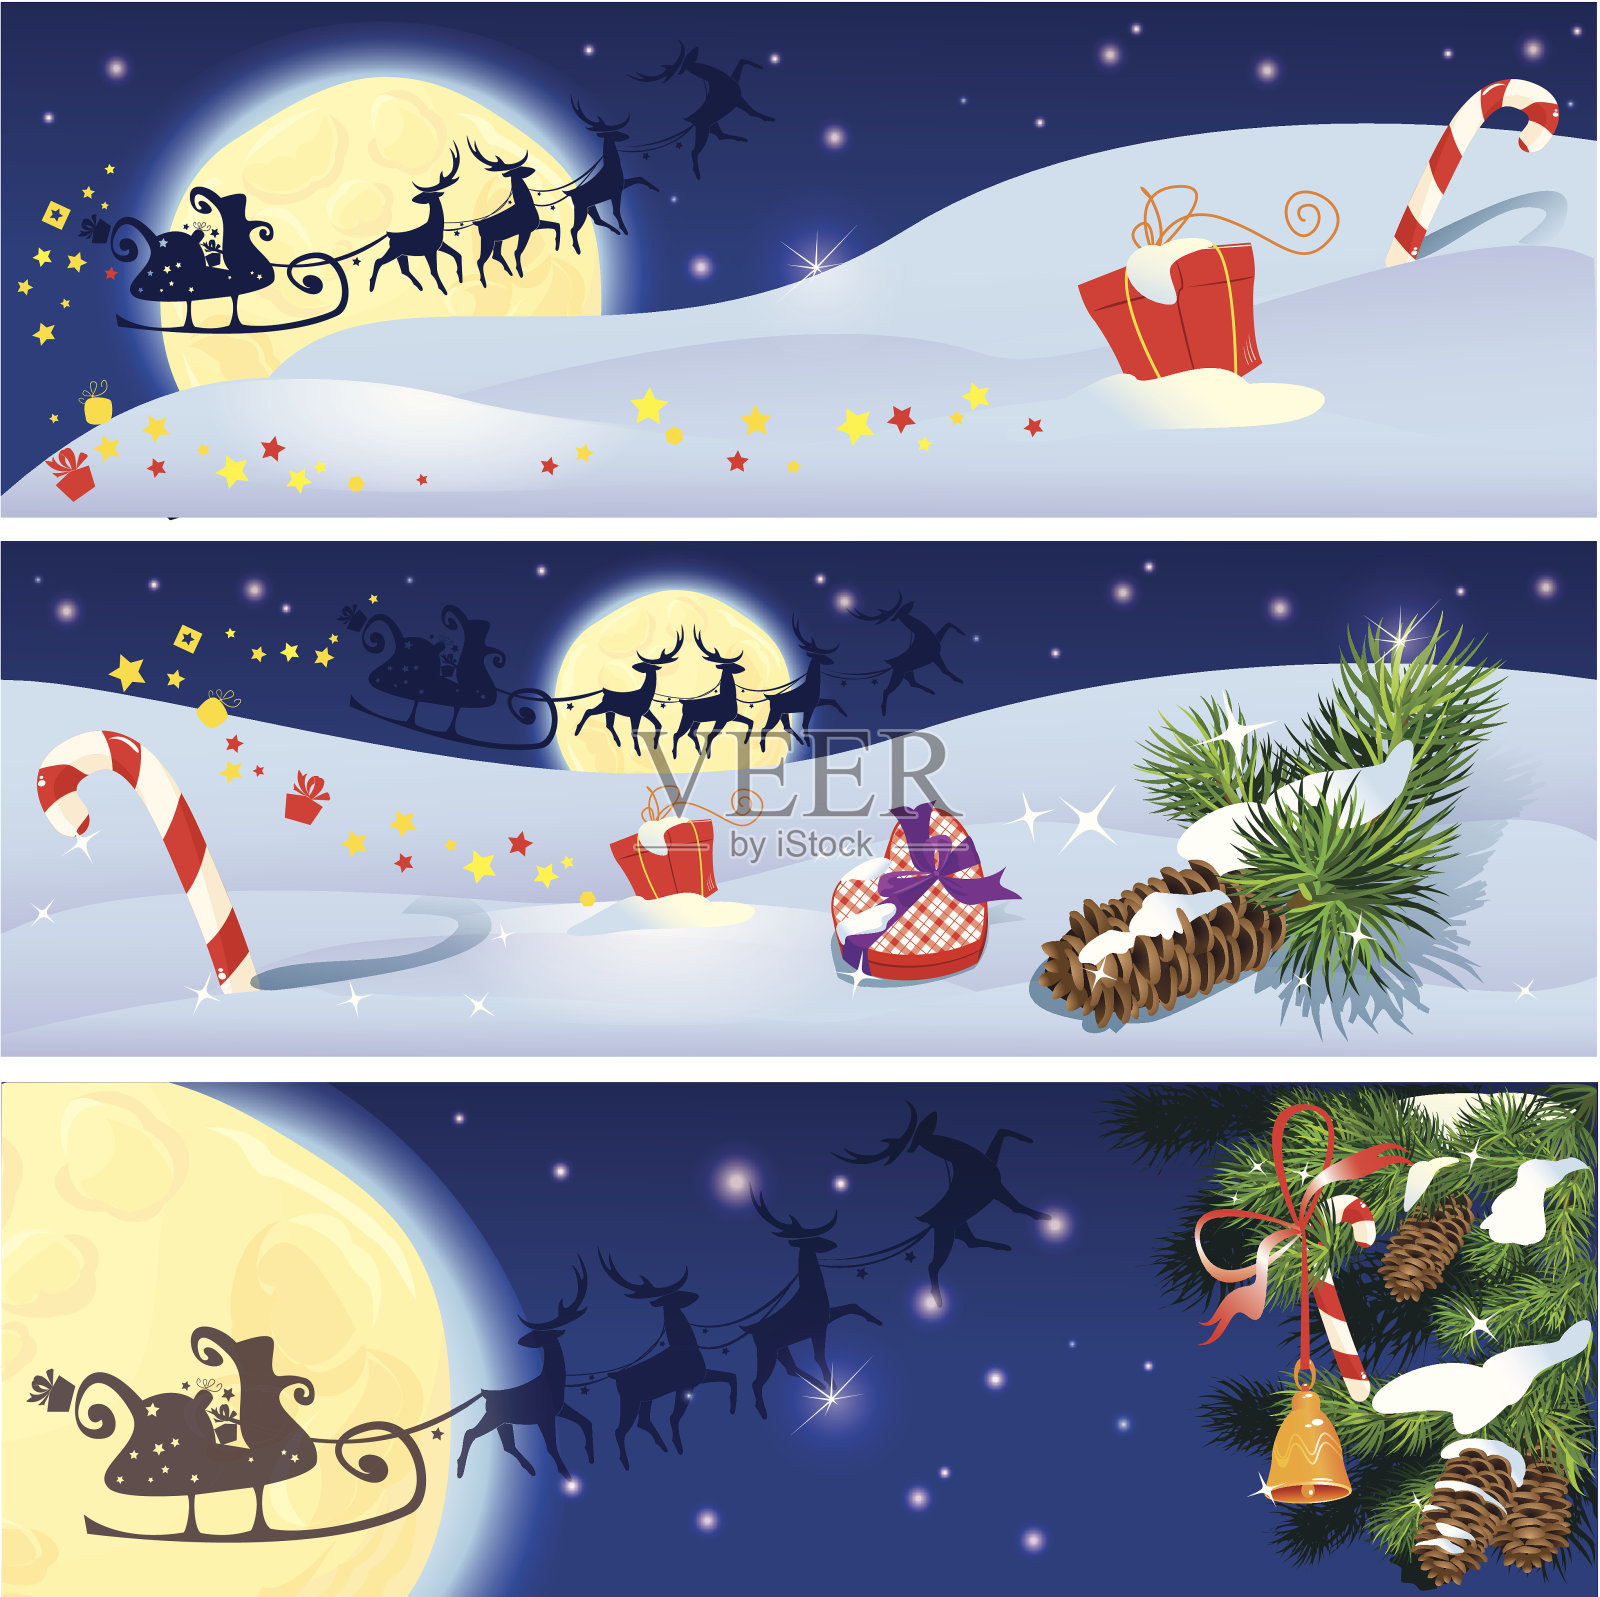 一套圣诞和新年水平横幅驯鹿插画图片素材